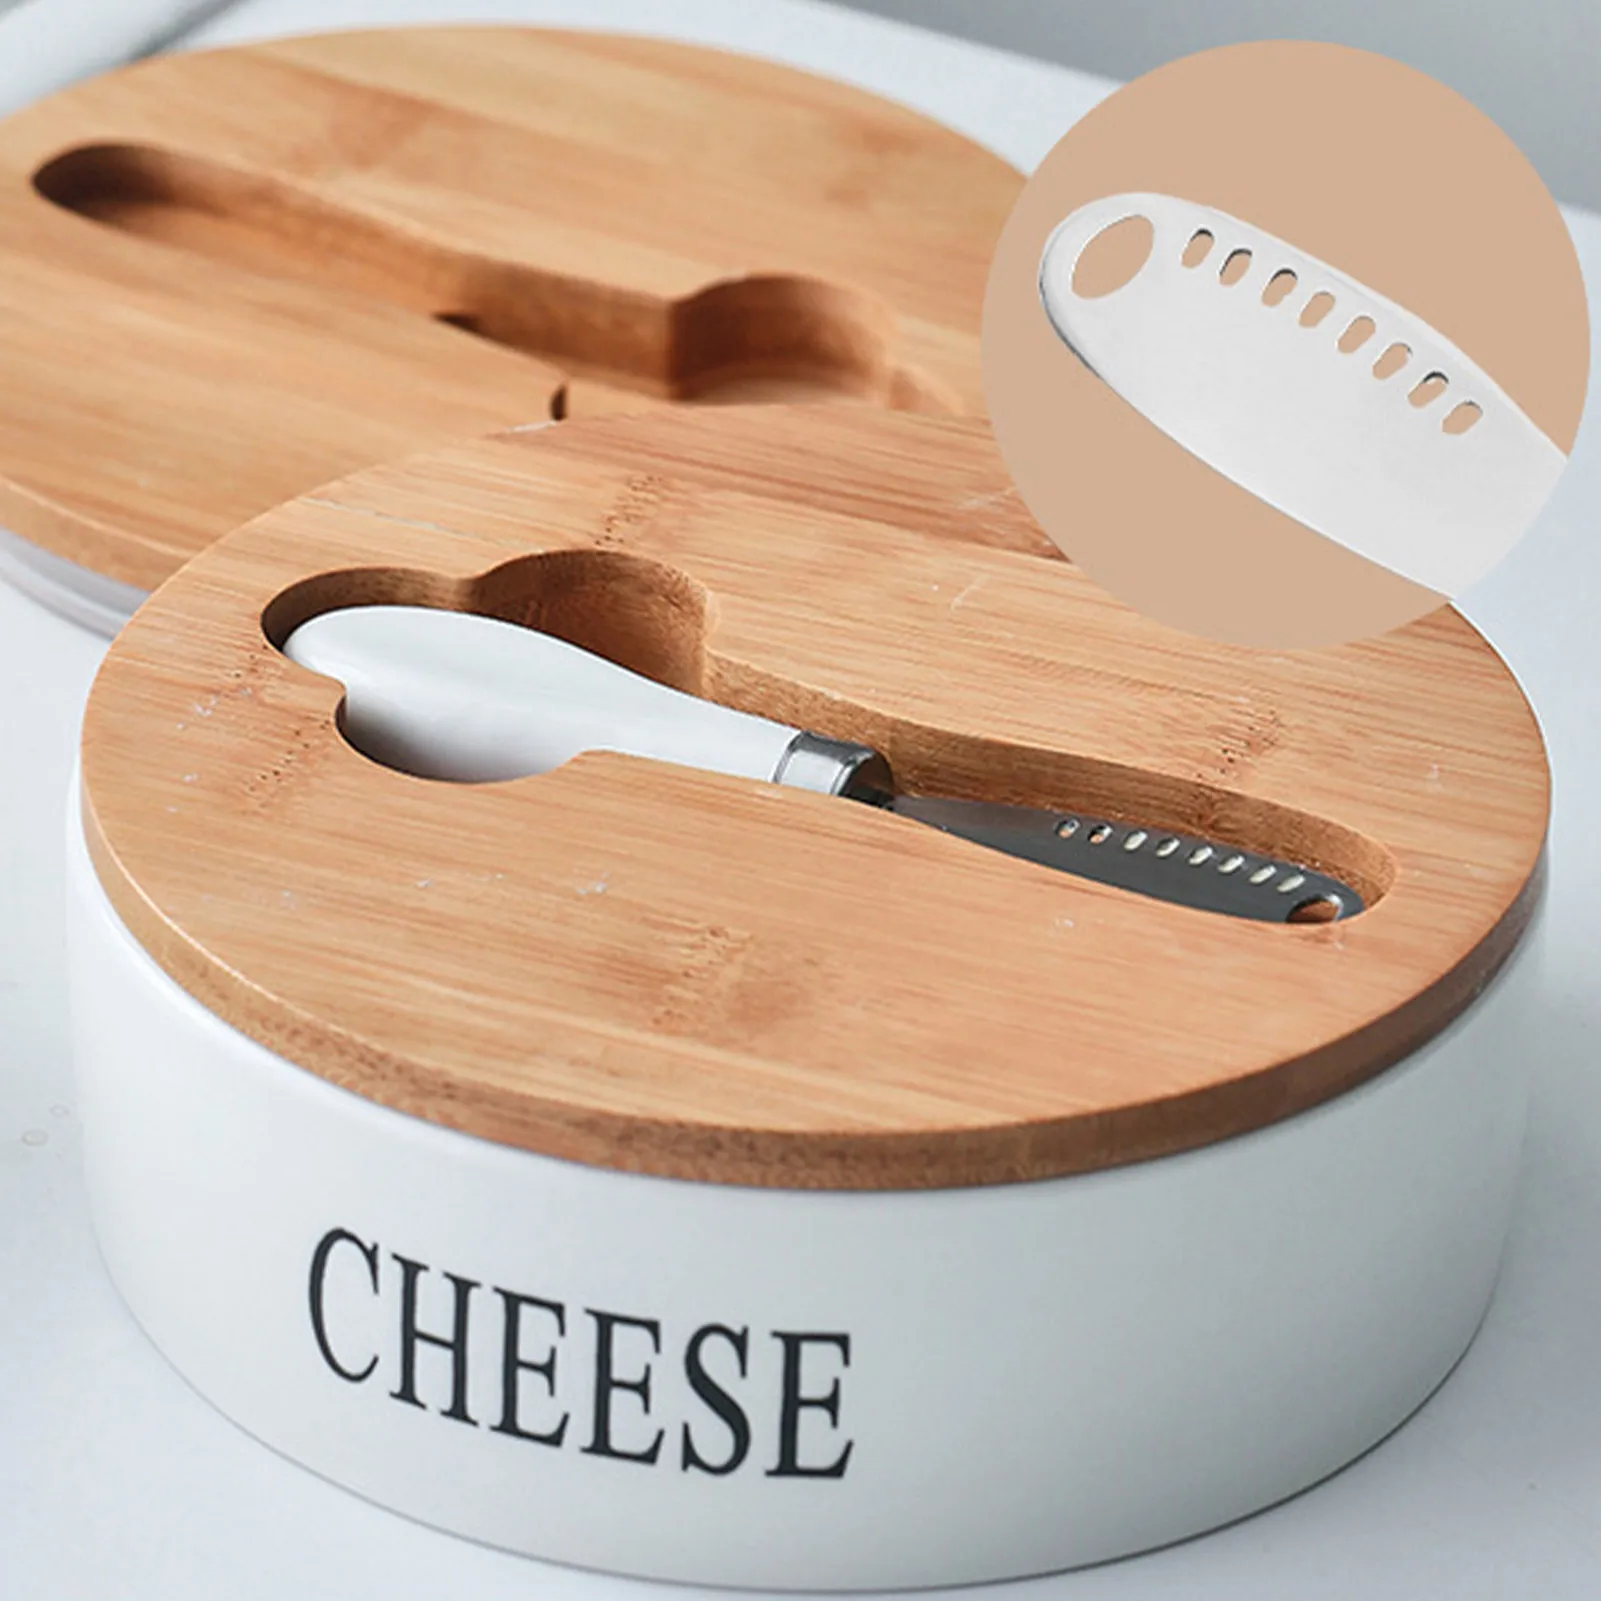 

2022 Скандинавская герметичная коробка для масла, керамическая тарелка для масла с крышкой и ножами, набор лоток для хранения сыра, контейнер,...